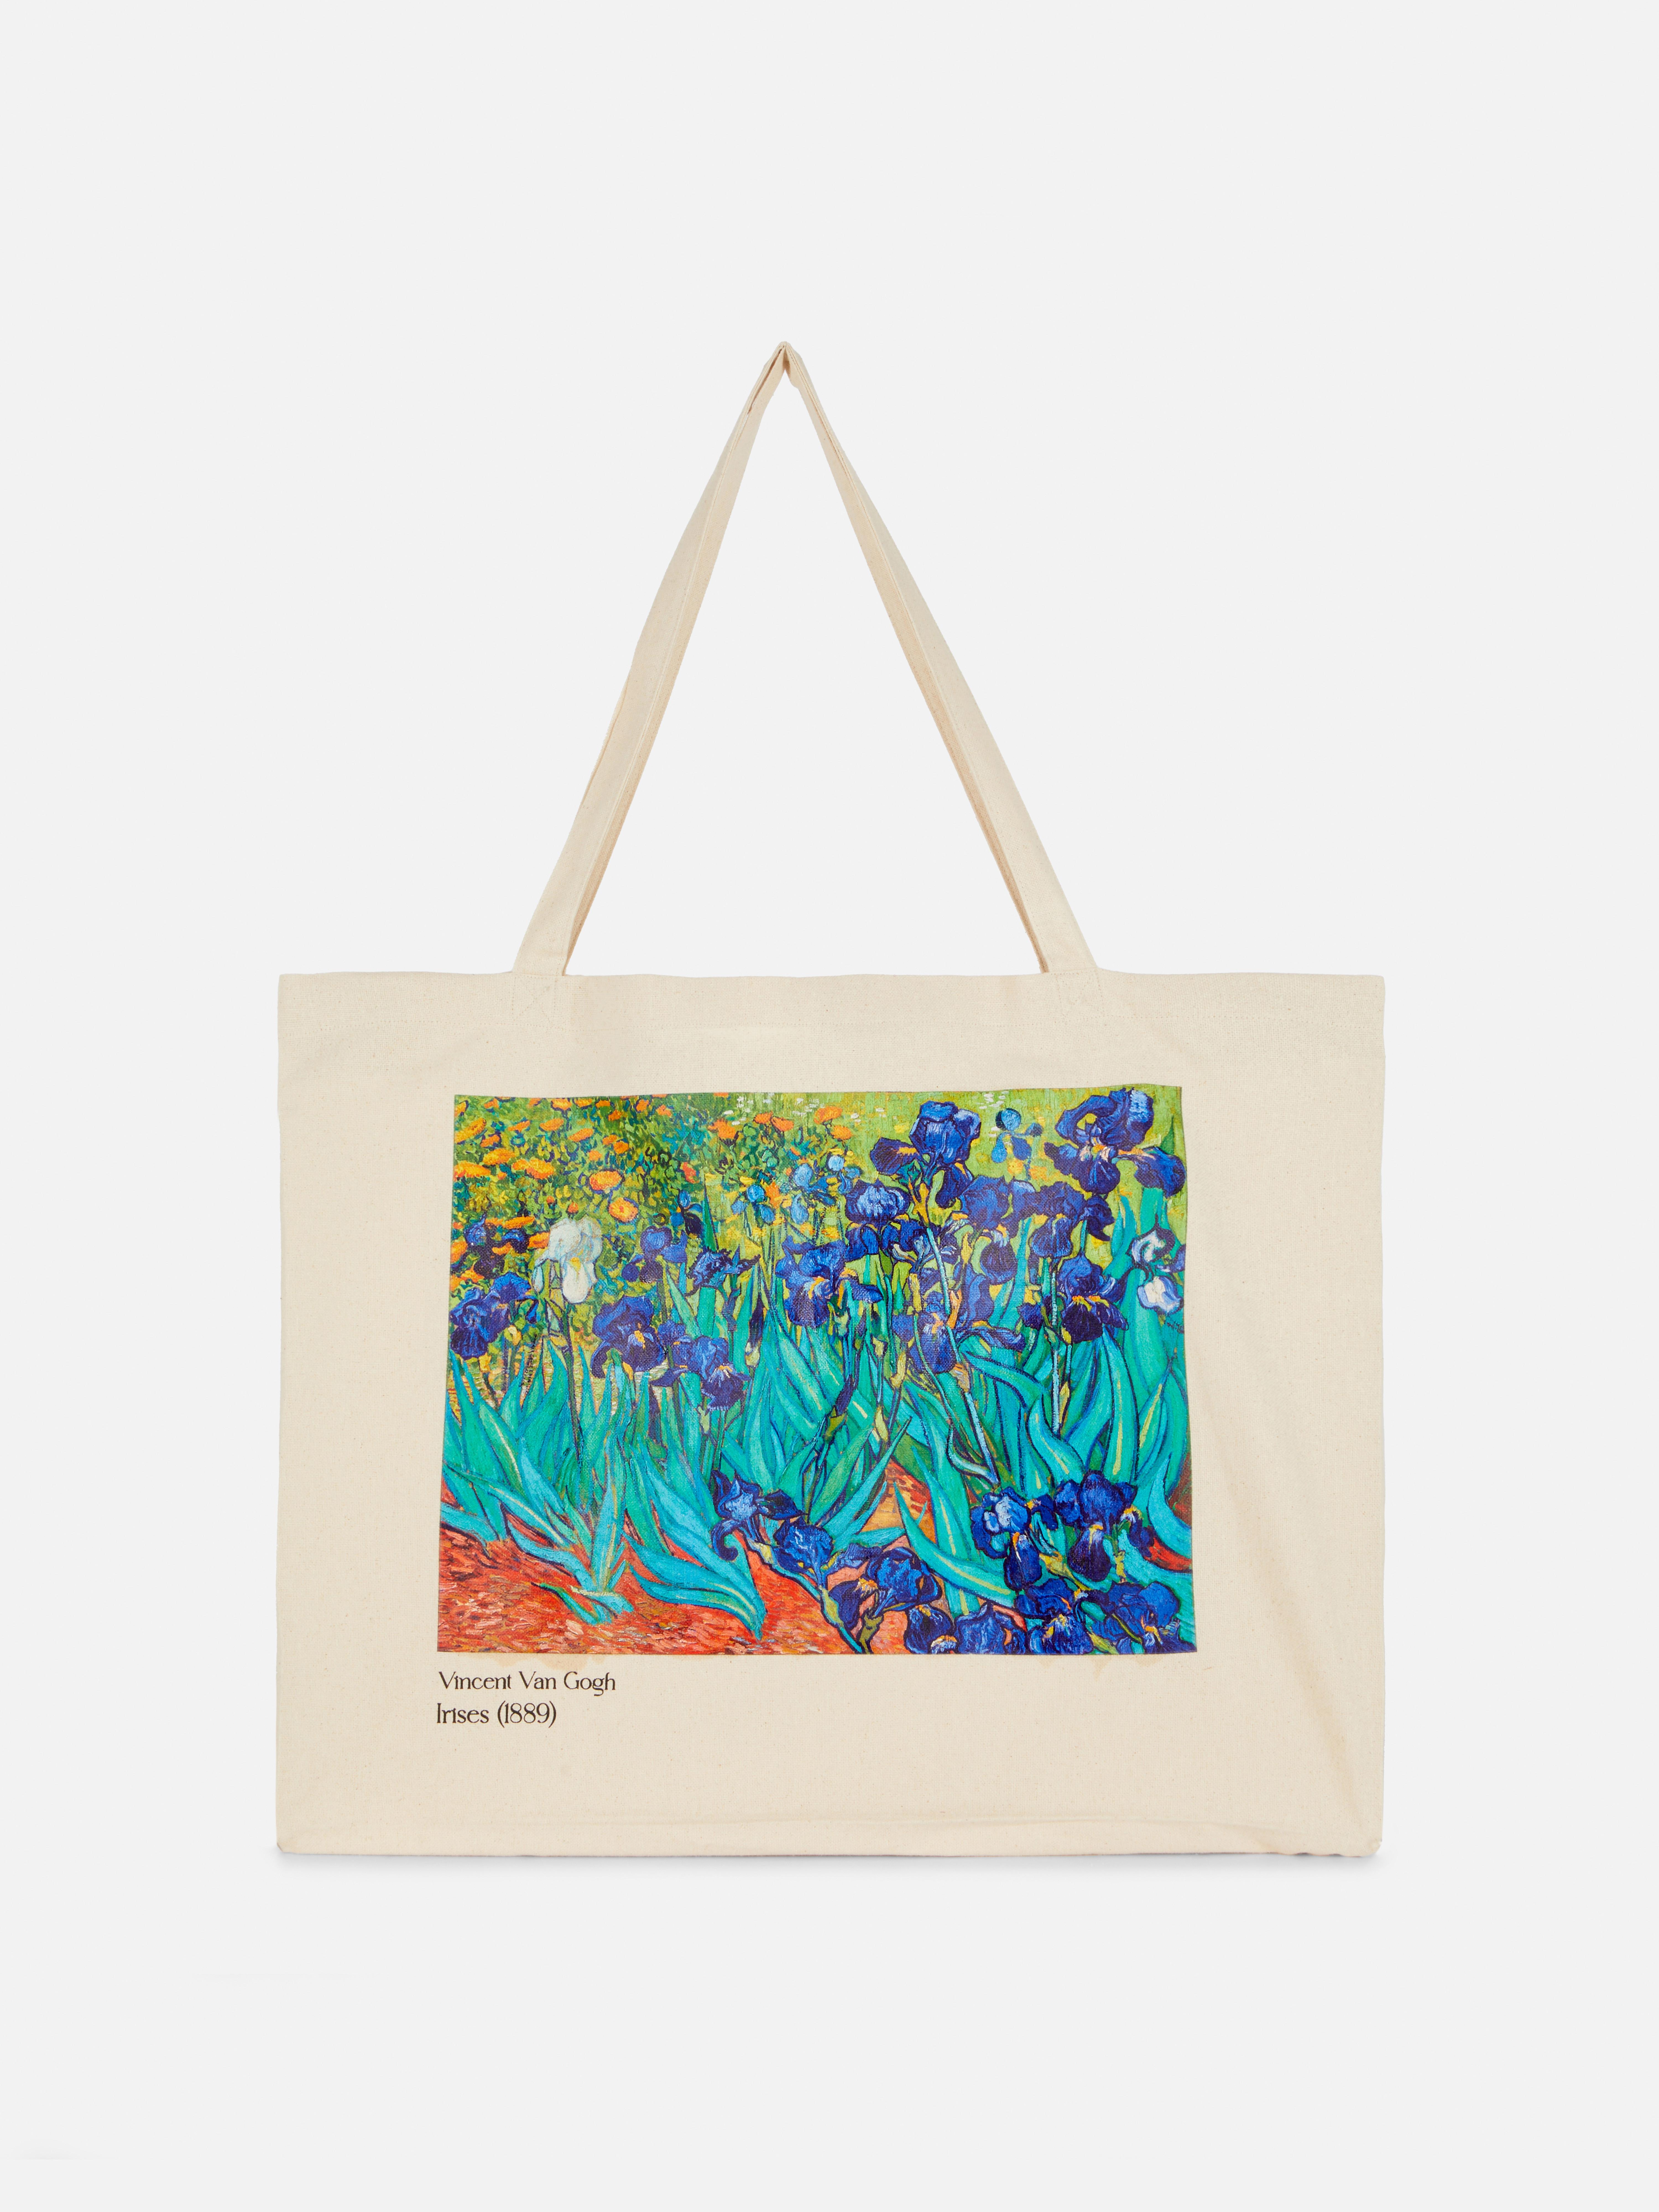 XL tote taška s kosatci od Vincenta van Gogha